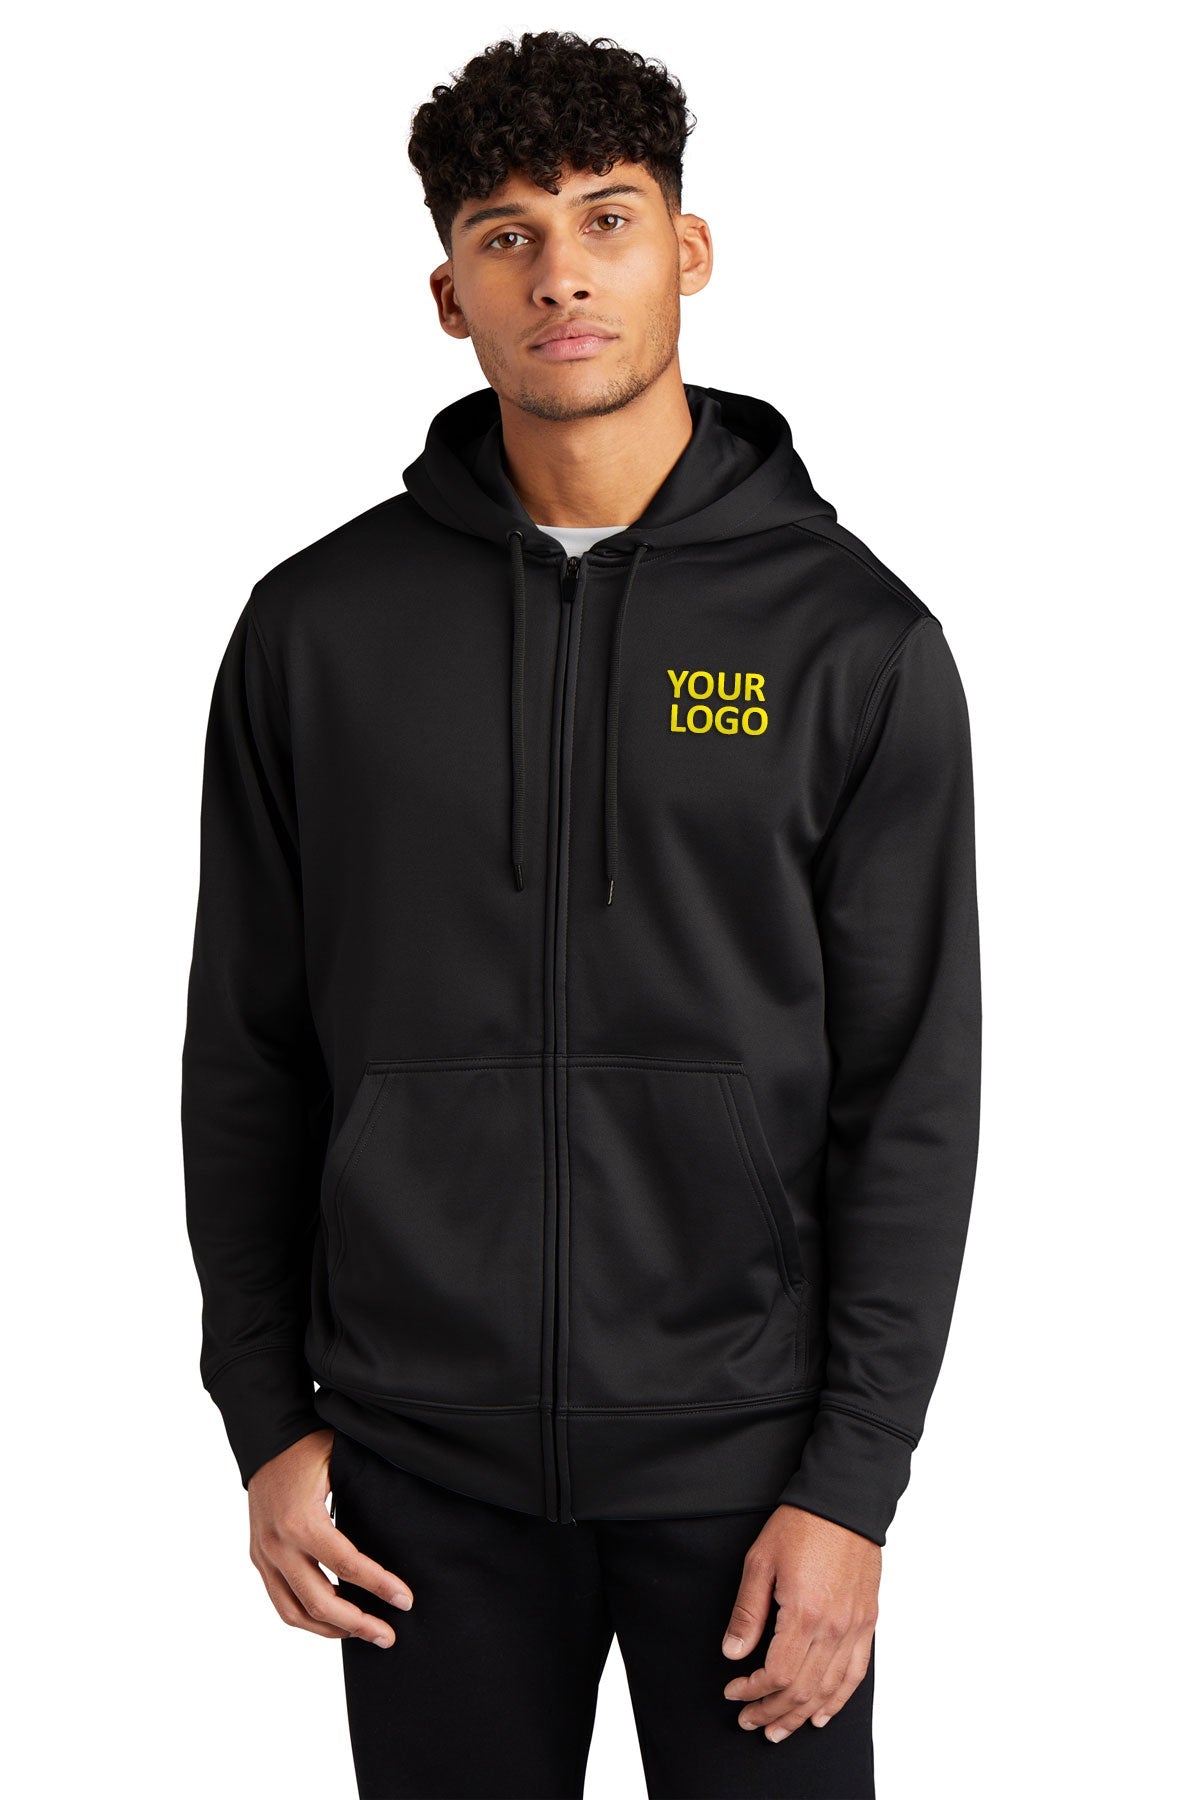 Branded Sport-Tek Fleece Full-Zip Hooded Jacket ST238 Black